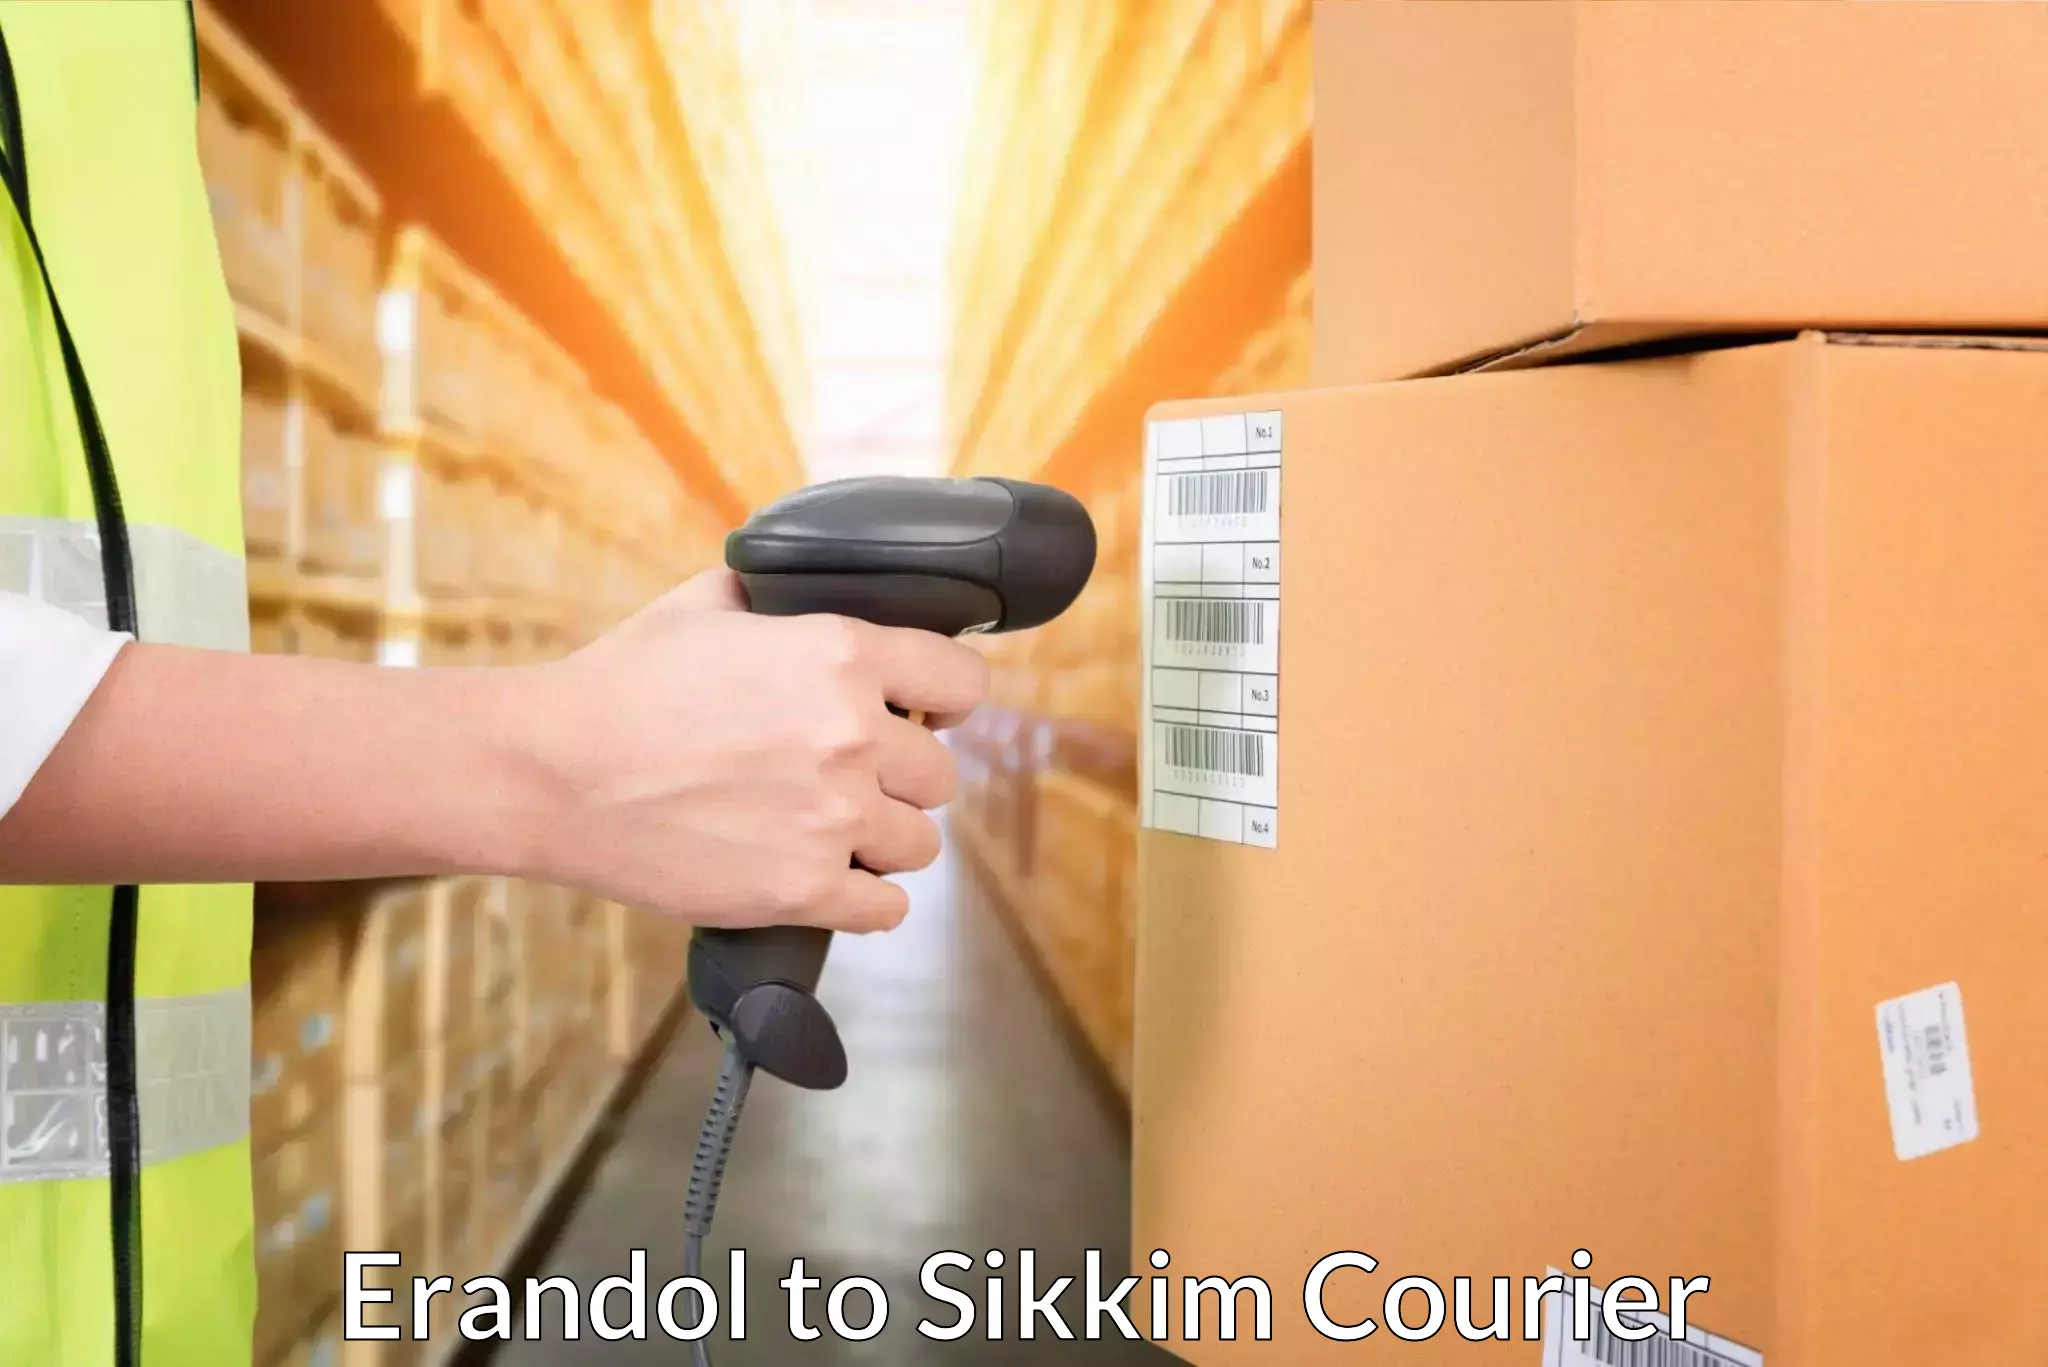 Courier tracking online Erandol to Sikkim